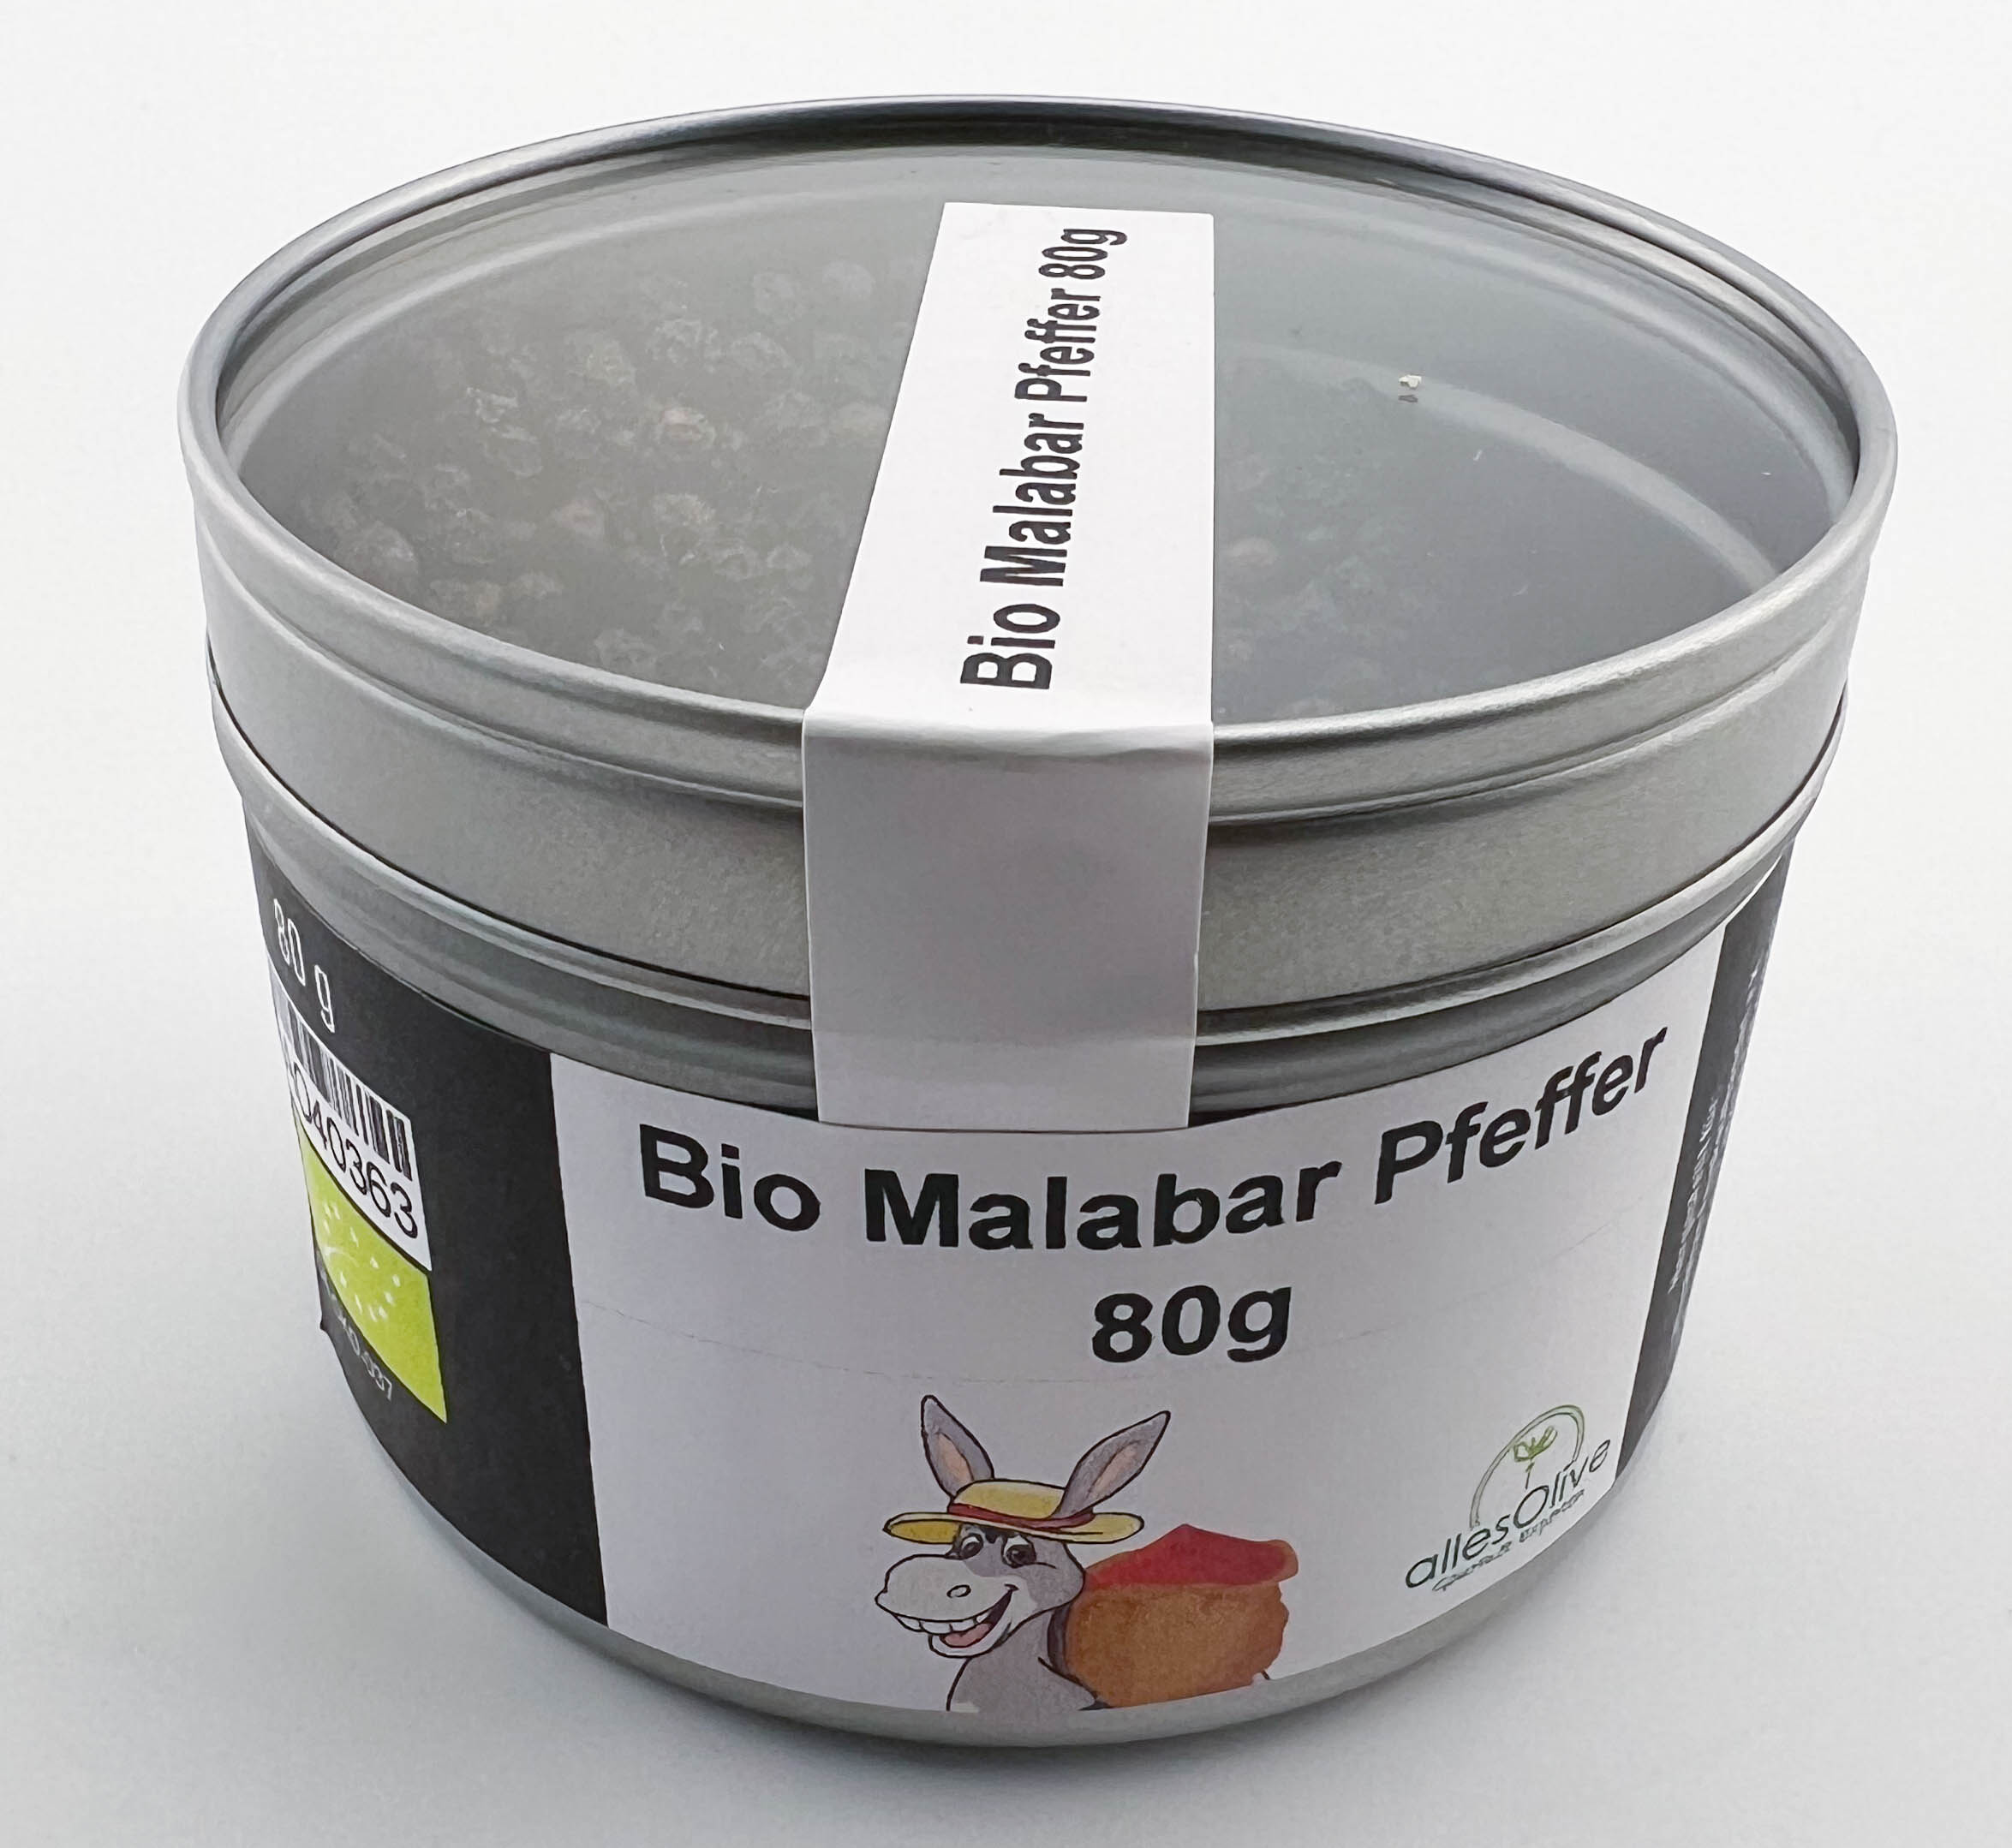 Bio Malabar Pfeffer 80g